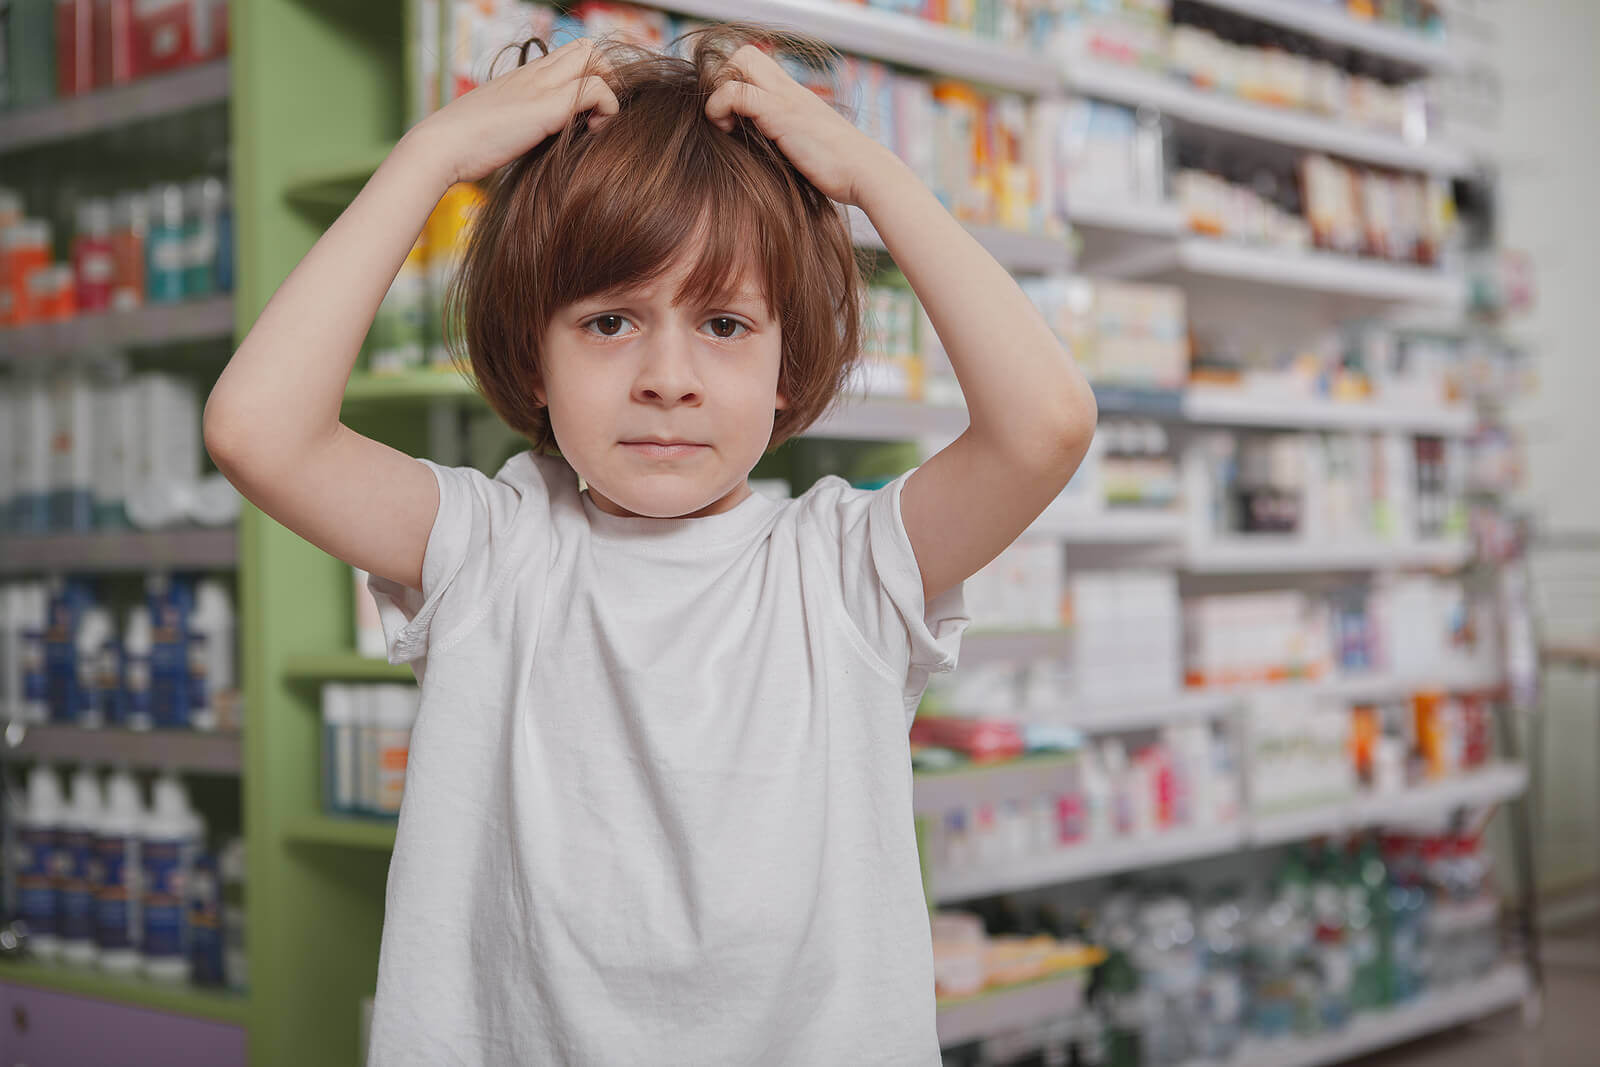 A little boy scrathing his head in a pharmacy.